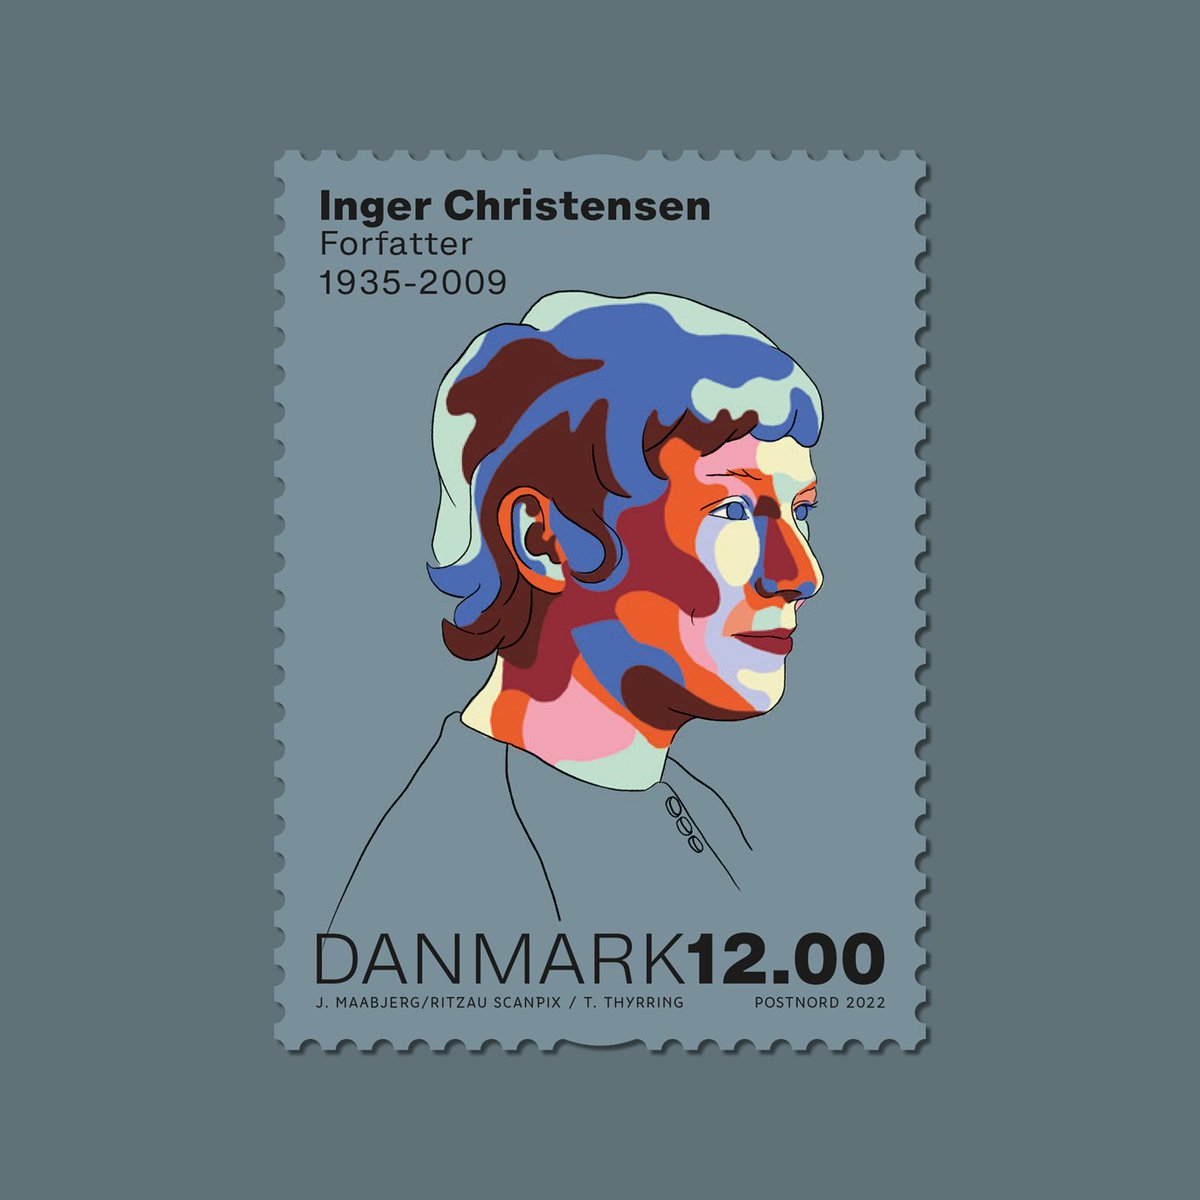 Inger Christensen é uma das maiores poetisas da 🇩🇰 e sua obra foi traduzida para 30 idiomas. 

Ela chegou a ser indicada ao Prêmio Nobel de #Literatura, e seus livros são referência em escolas e universidades 🇩🇰 E por isso ela foi homenageada em selo lançado pela @postnorddk